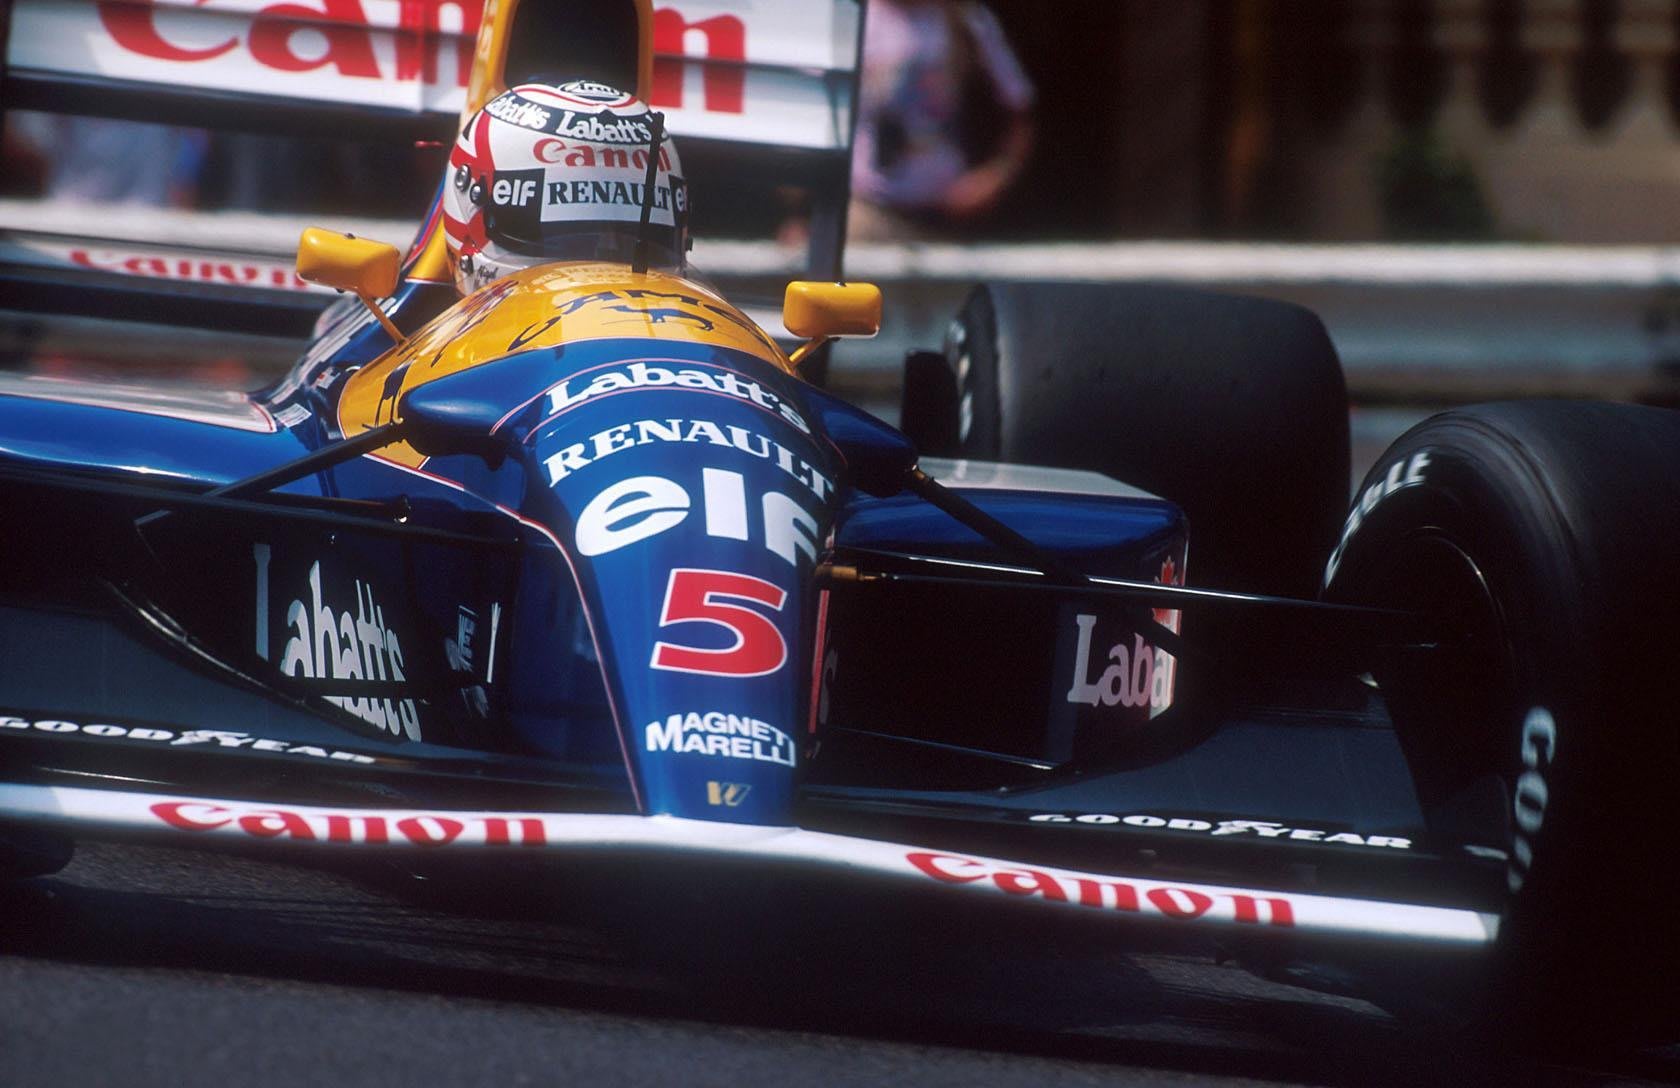 Mansell pôs à venda a coleção de carros de corrida